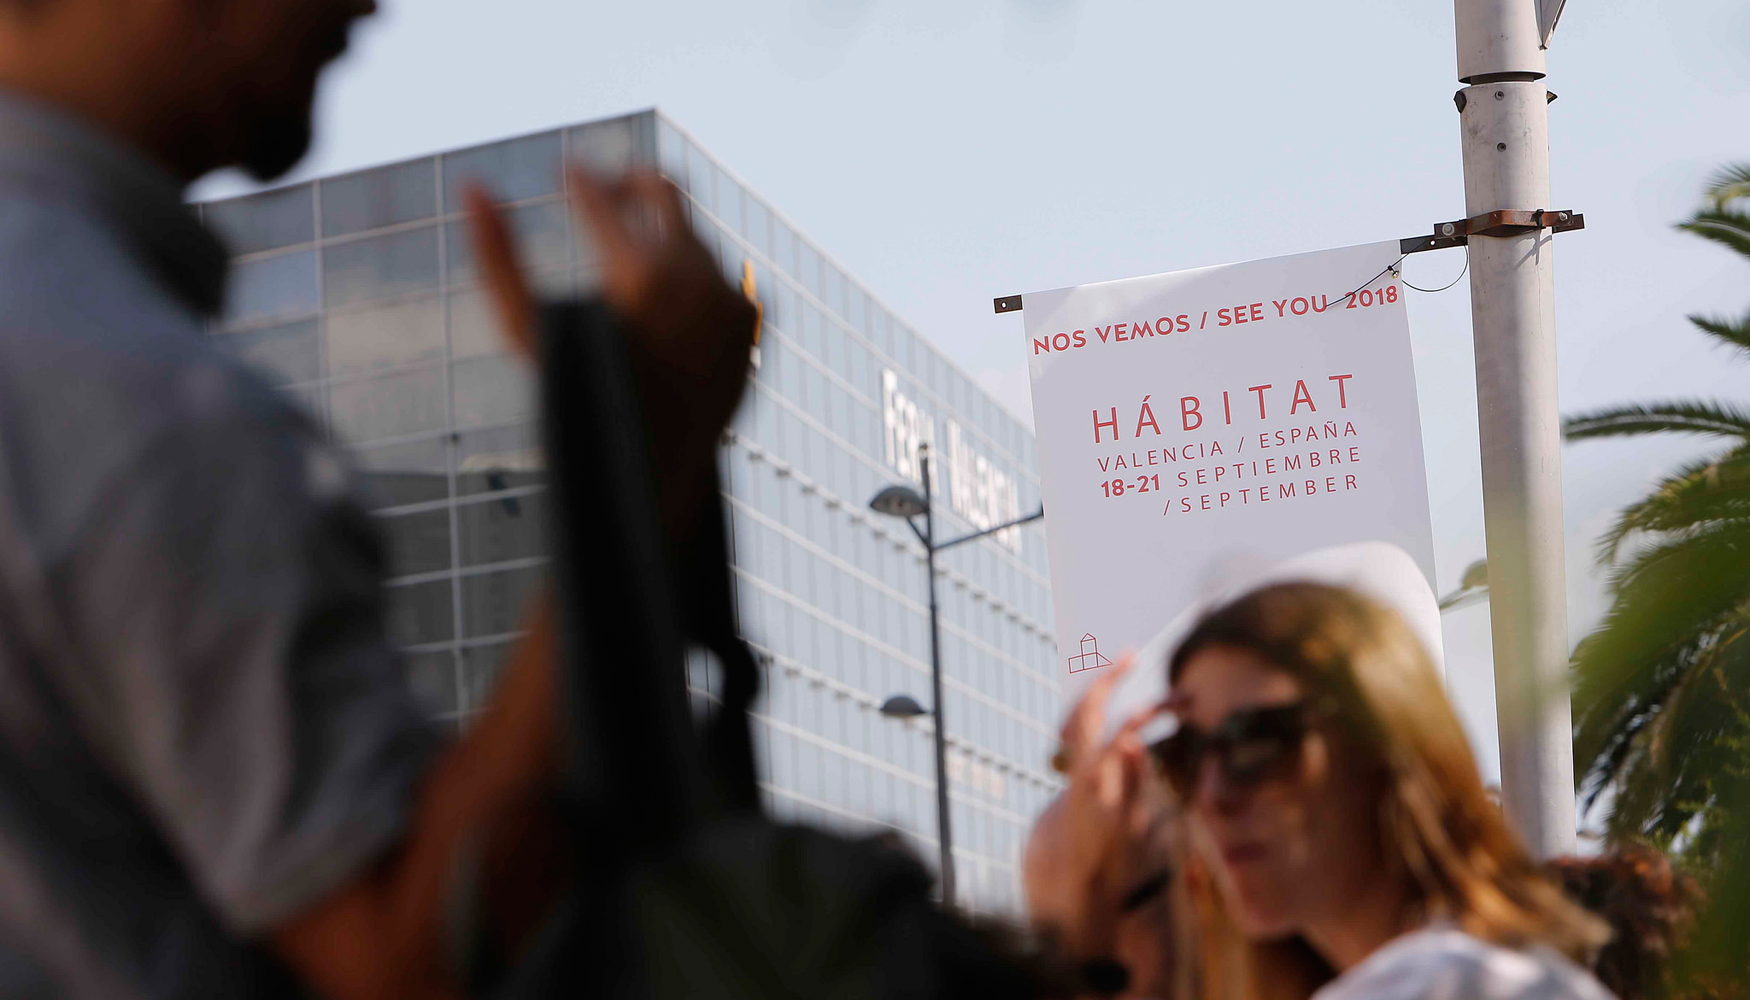 Hbitat'17 ha cerrado sus puertas con unos registros que invitan al optimismo